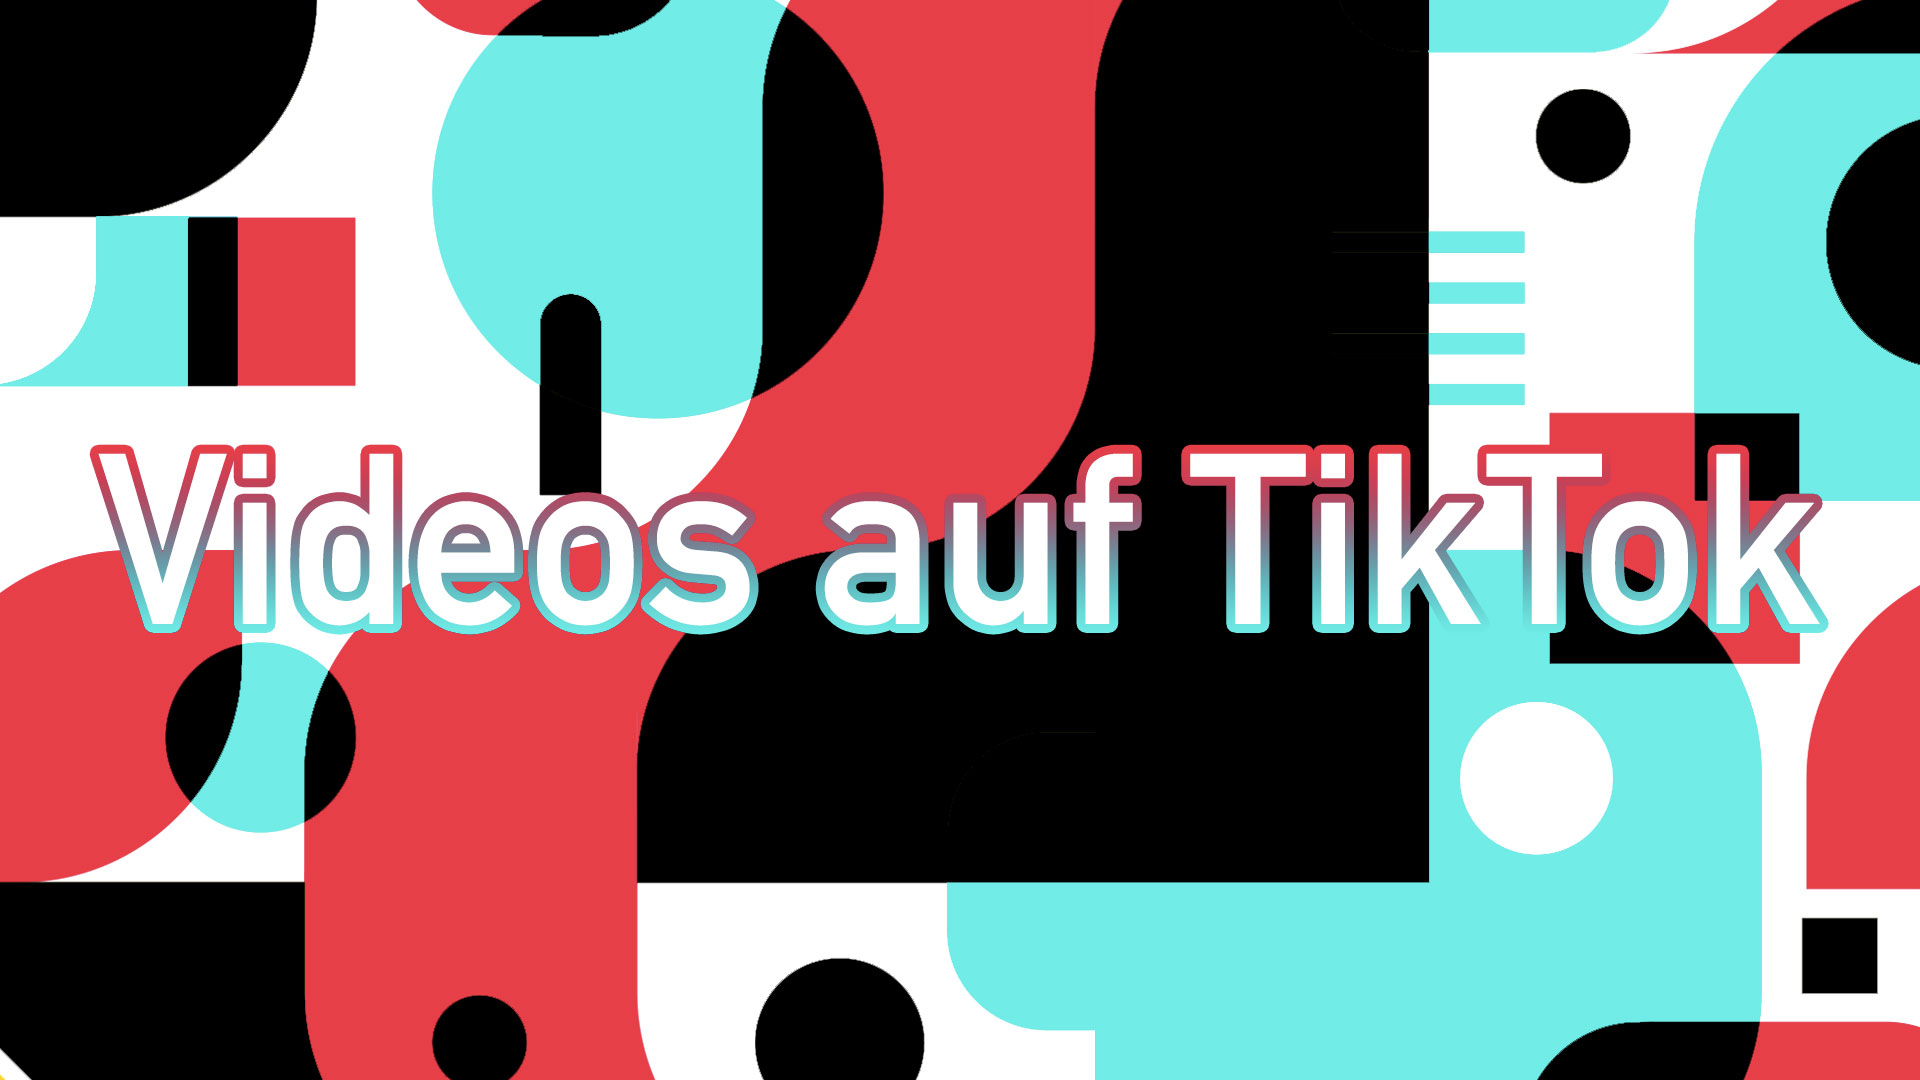 Social-Media Videos erstellen für TikTok: Darauf sollten Sie achten!